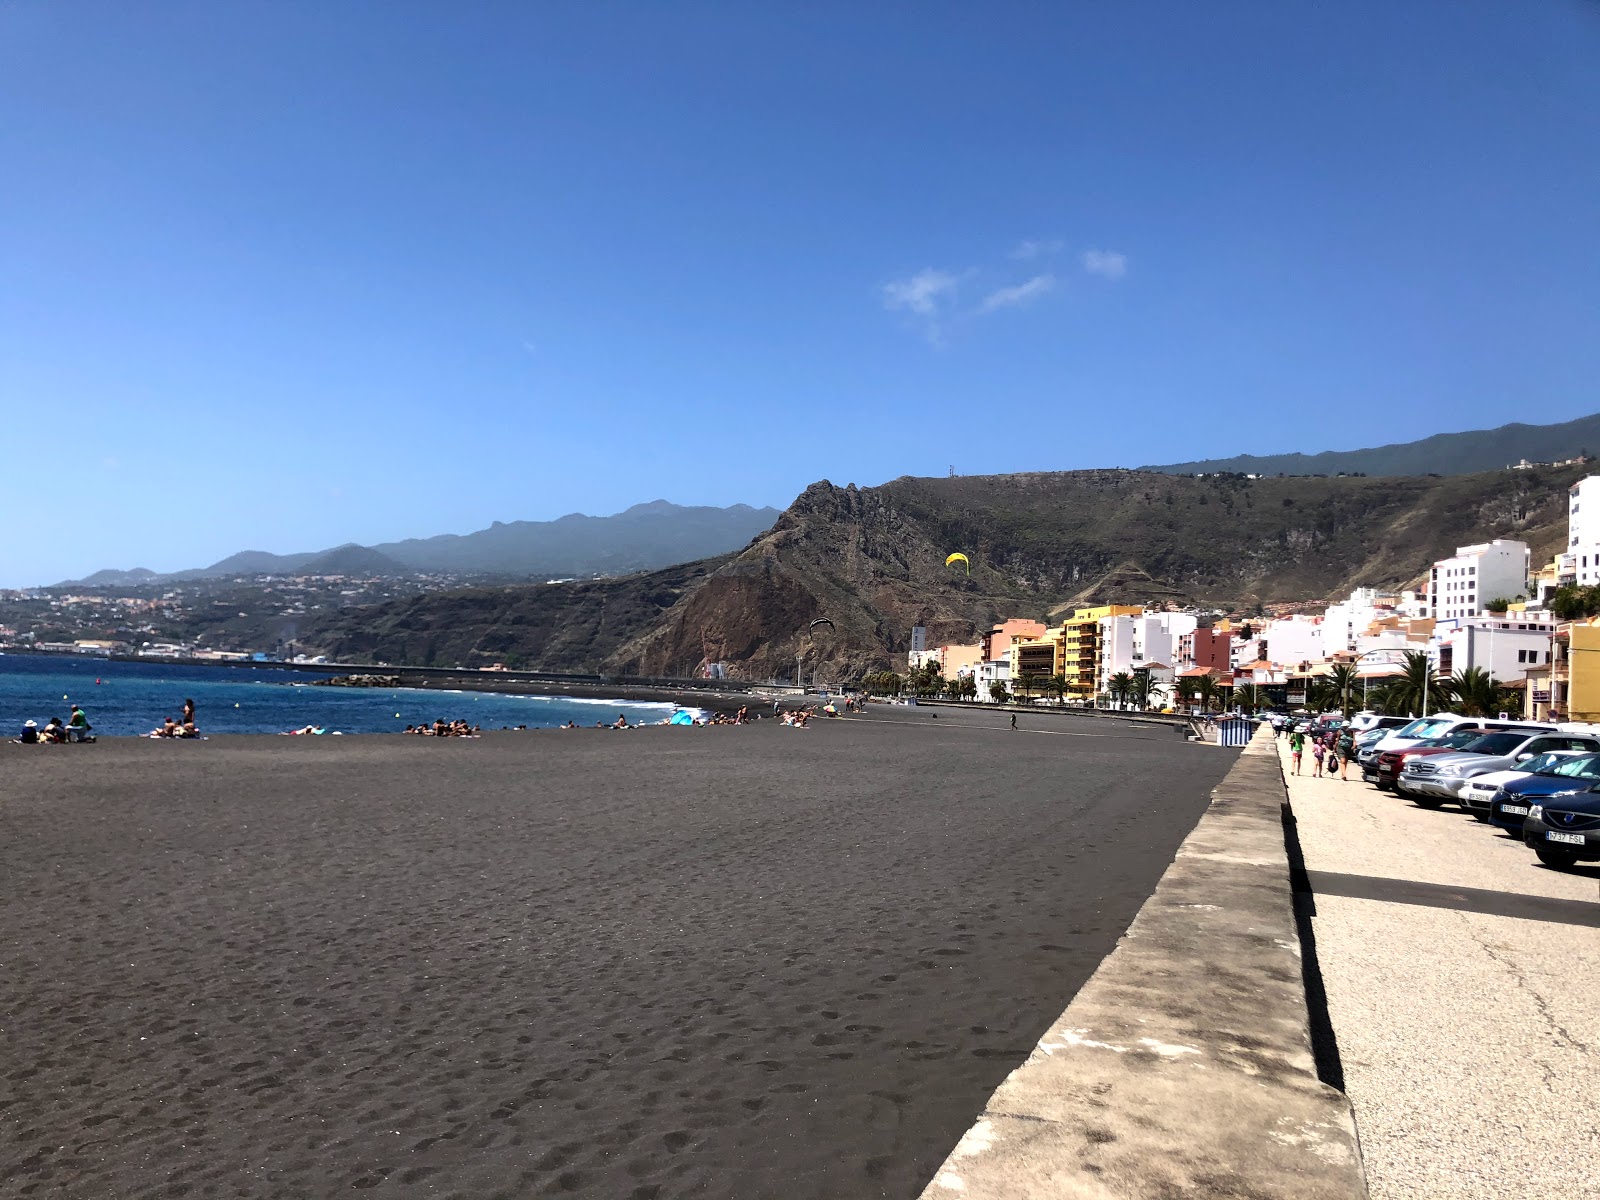 Fotografija Playa de Santa Cruz in naselje